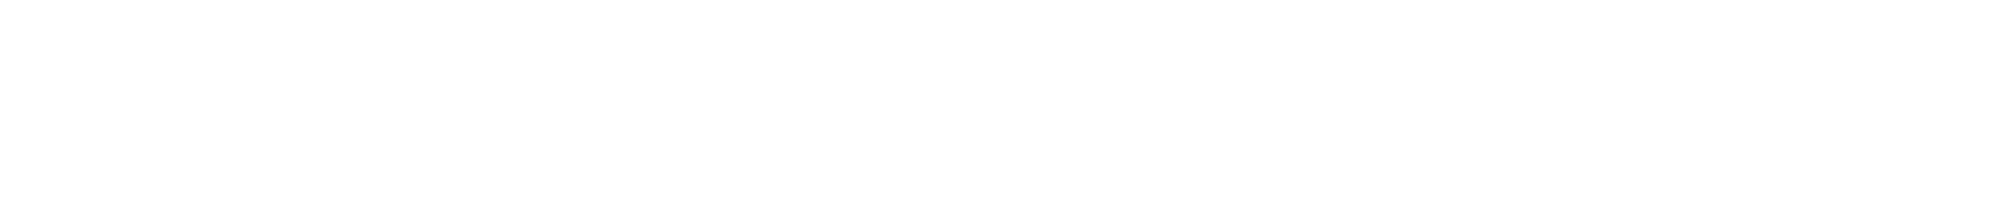 RVDA-SSI-white